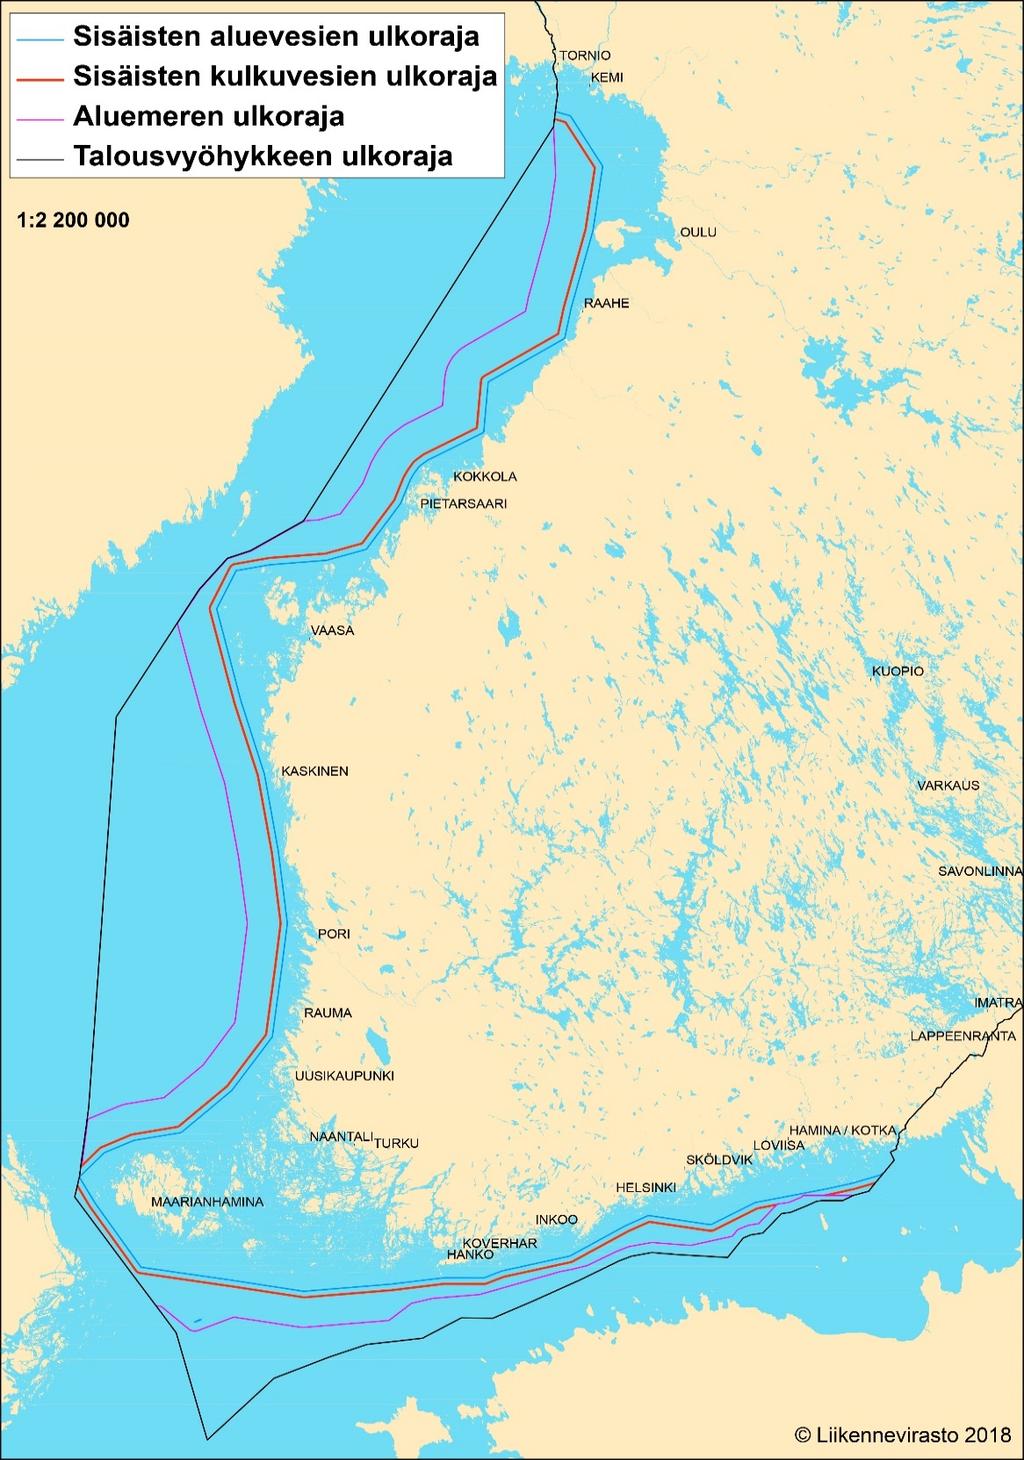 on selventävä kuva, jossa sisimpänä oleva sininen raja kuvaa sisäisten aluevesien ulkorajaa ja sen vieressä oleva punainen raja sisäisten